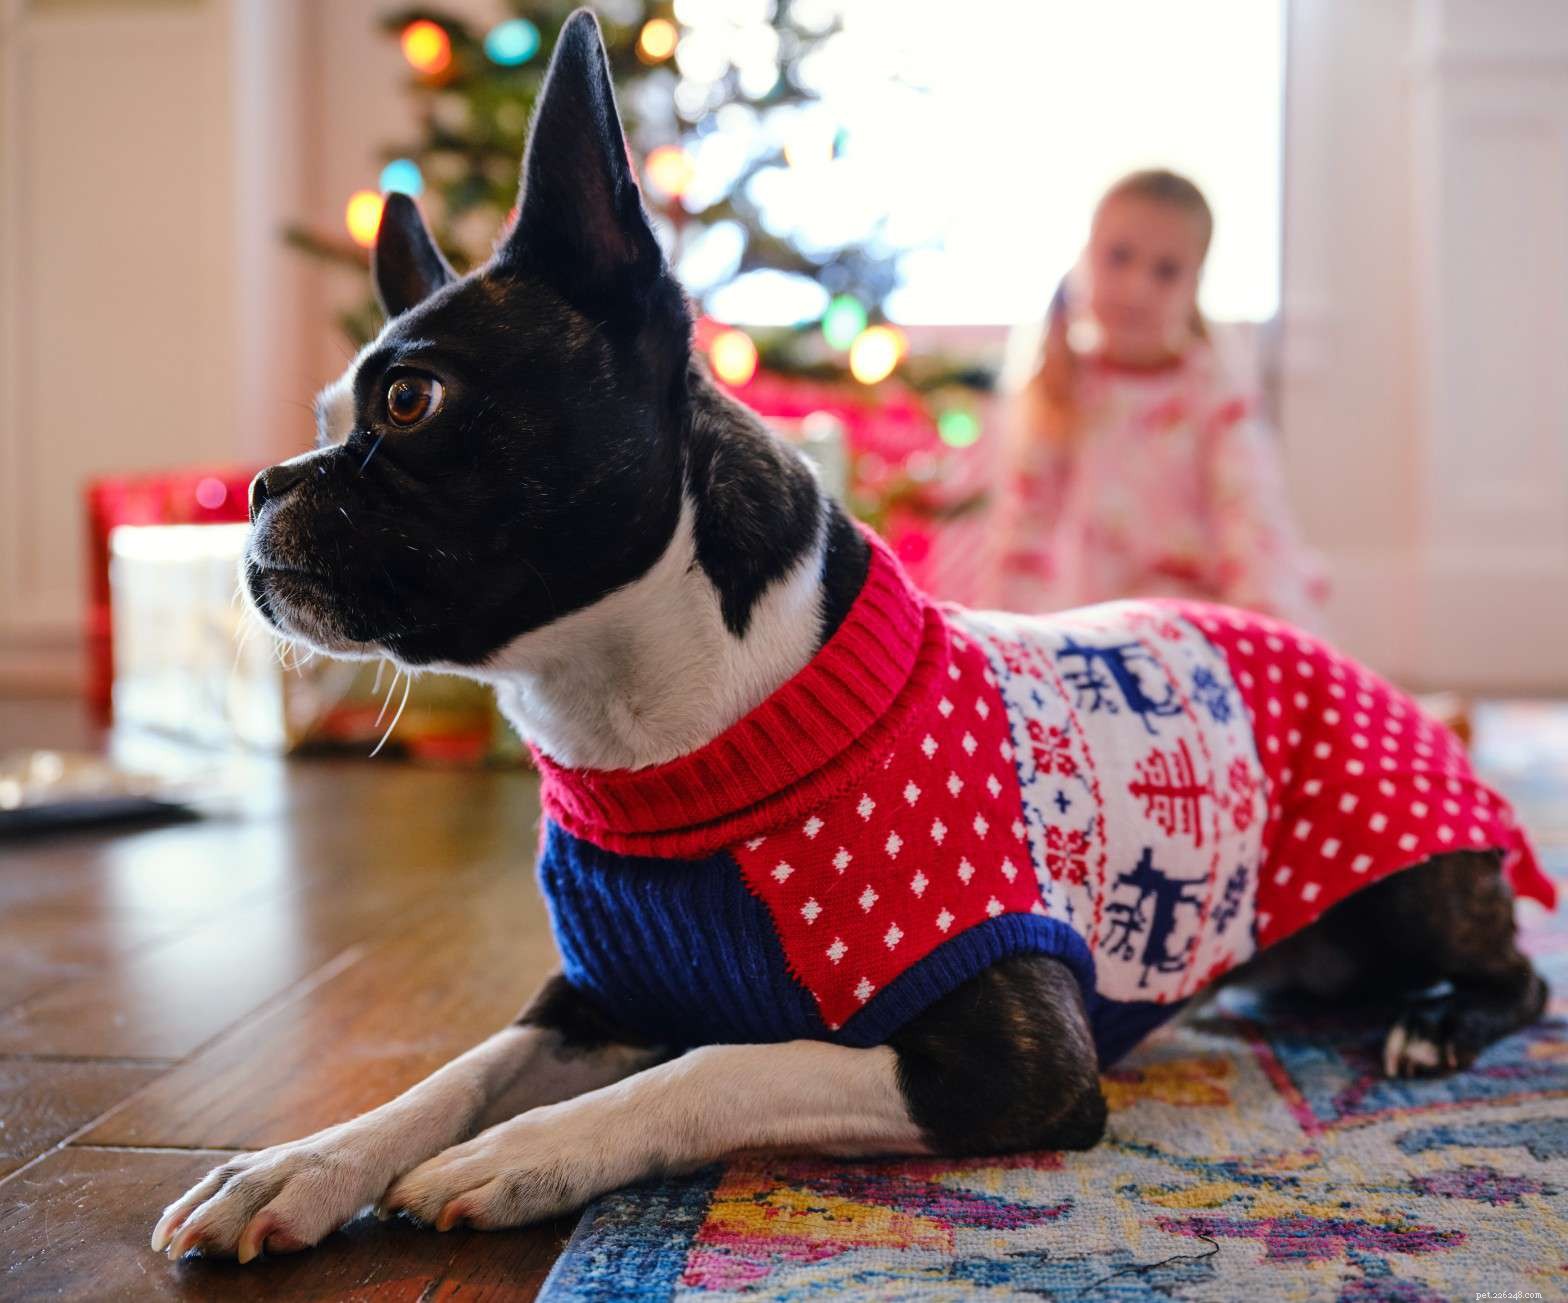 Měli byste svému psovi v chladném počasí obléci svetr?